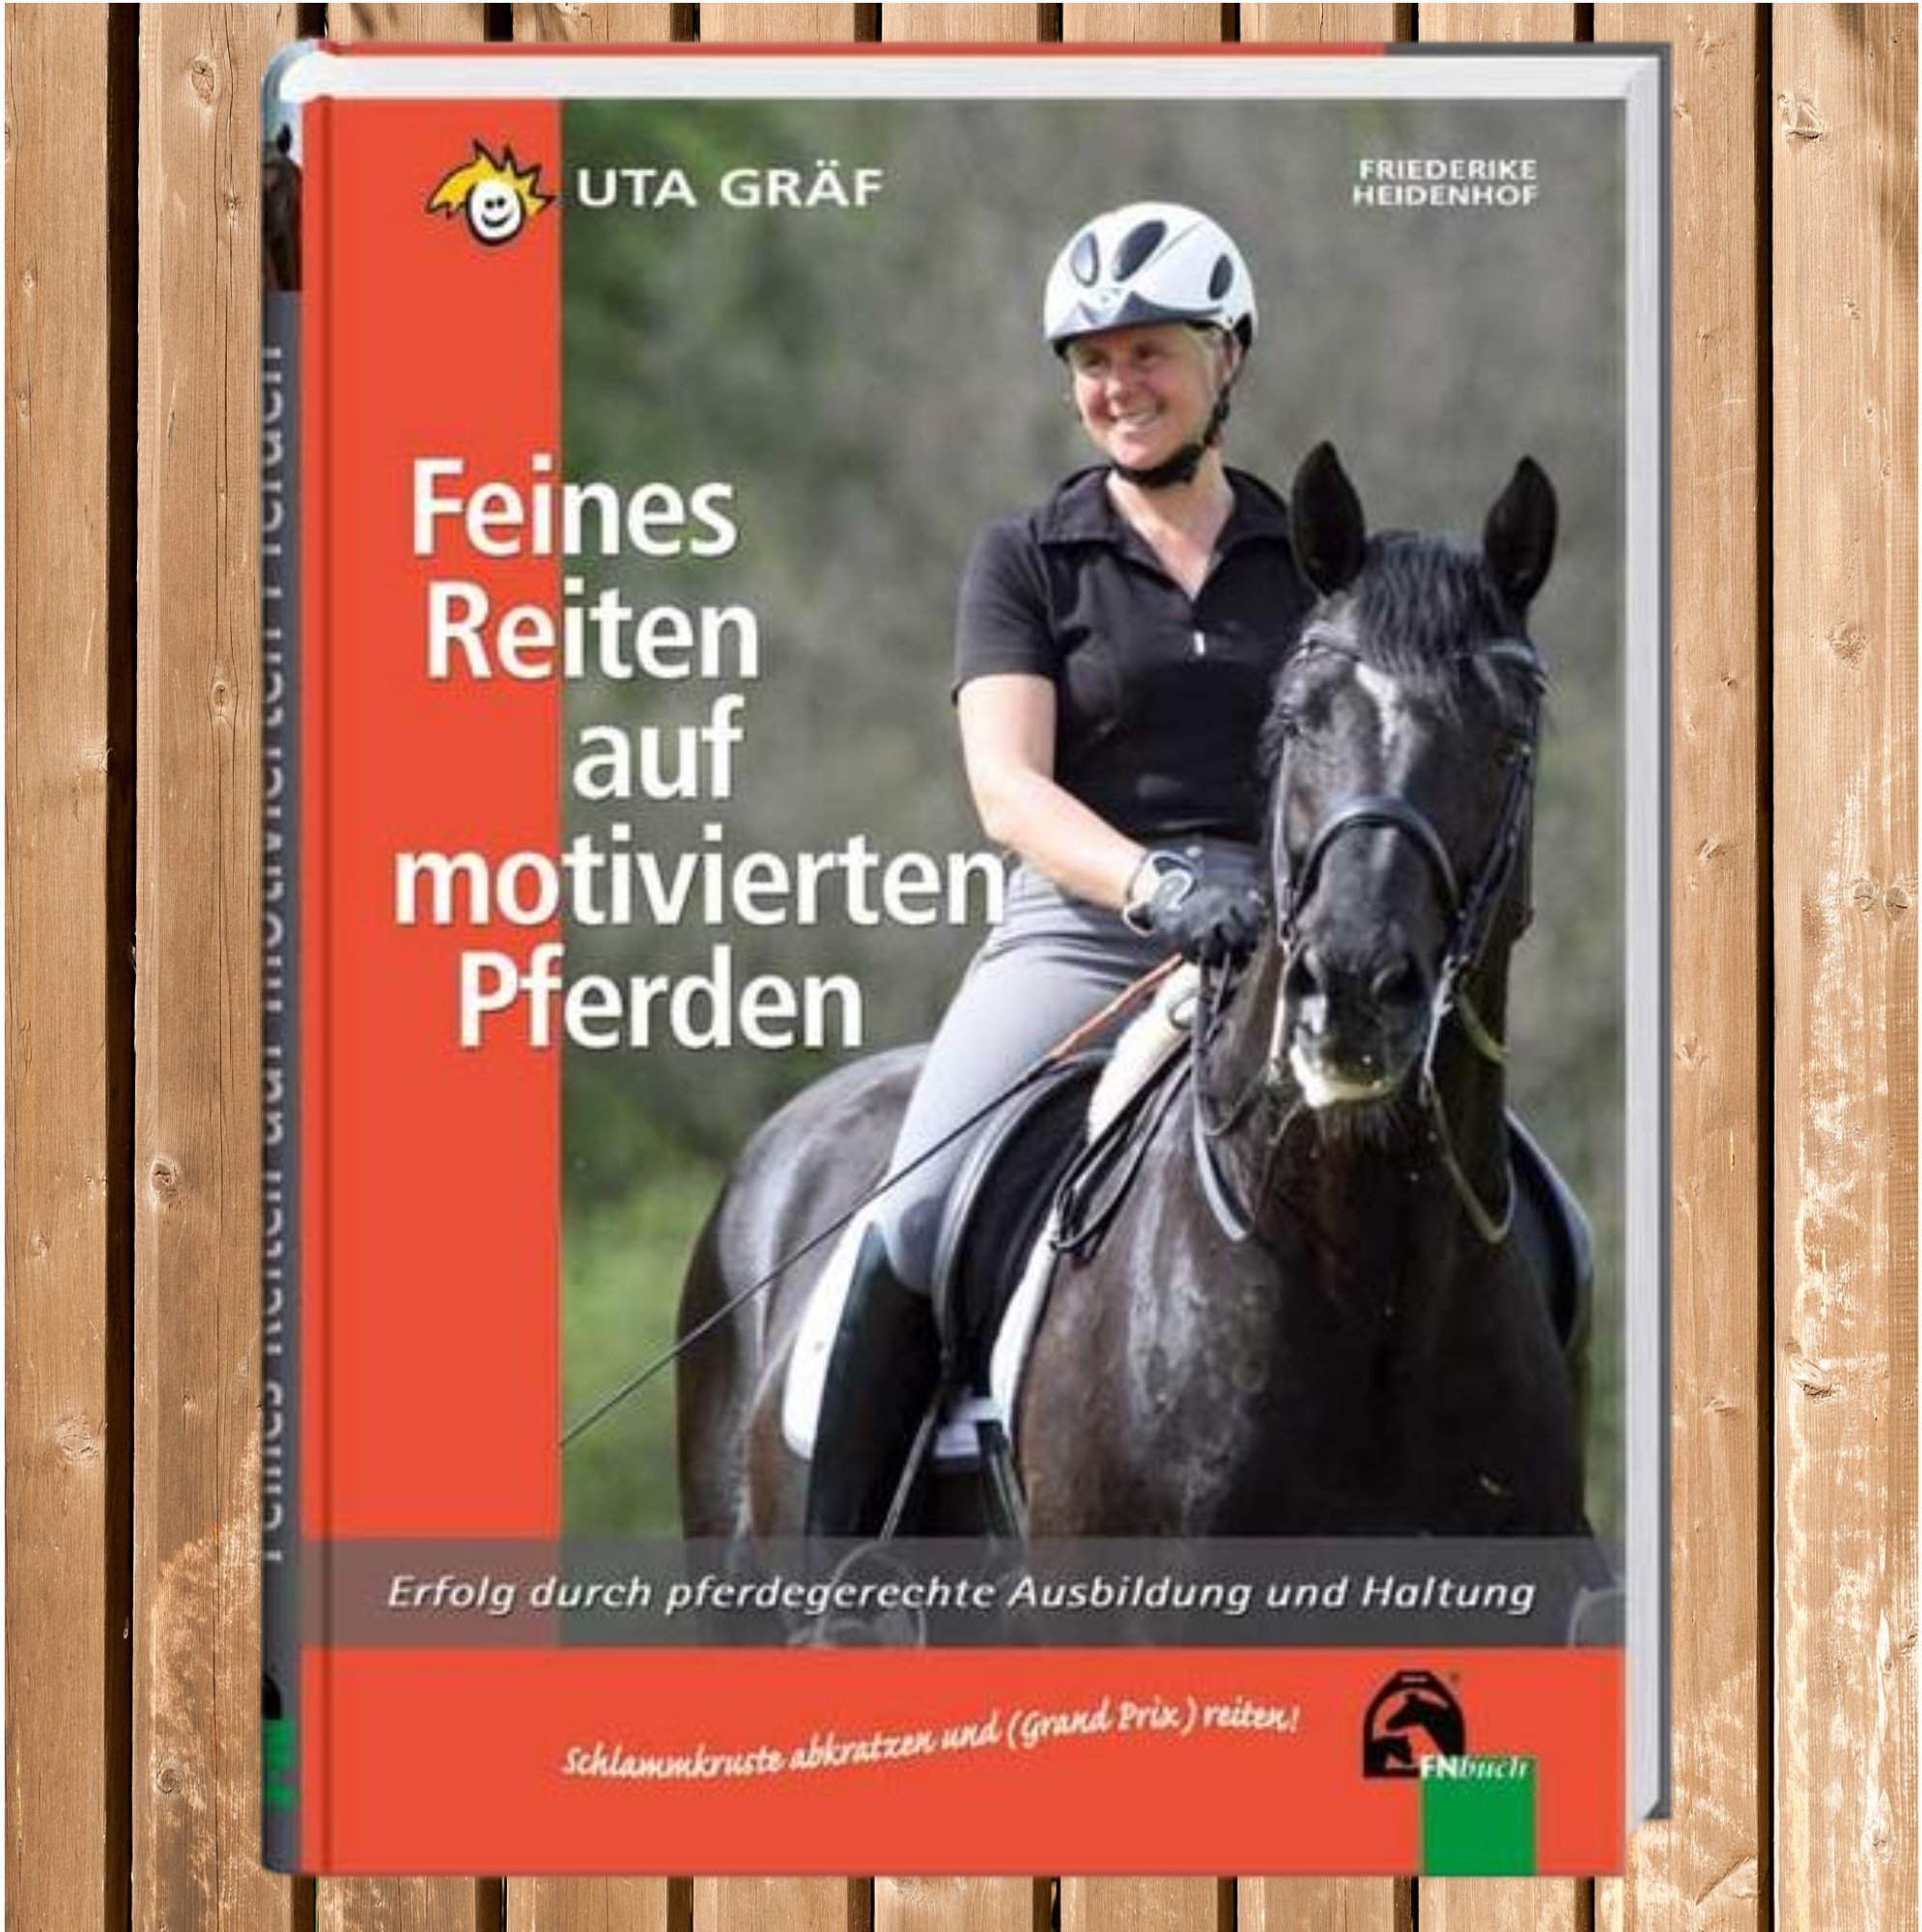 Feines Reiten auf motivierten Pferden m. Uta Gräf, FN Buch